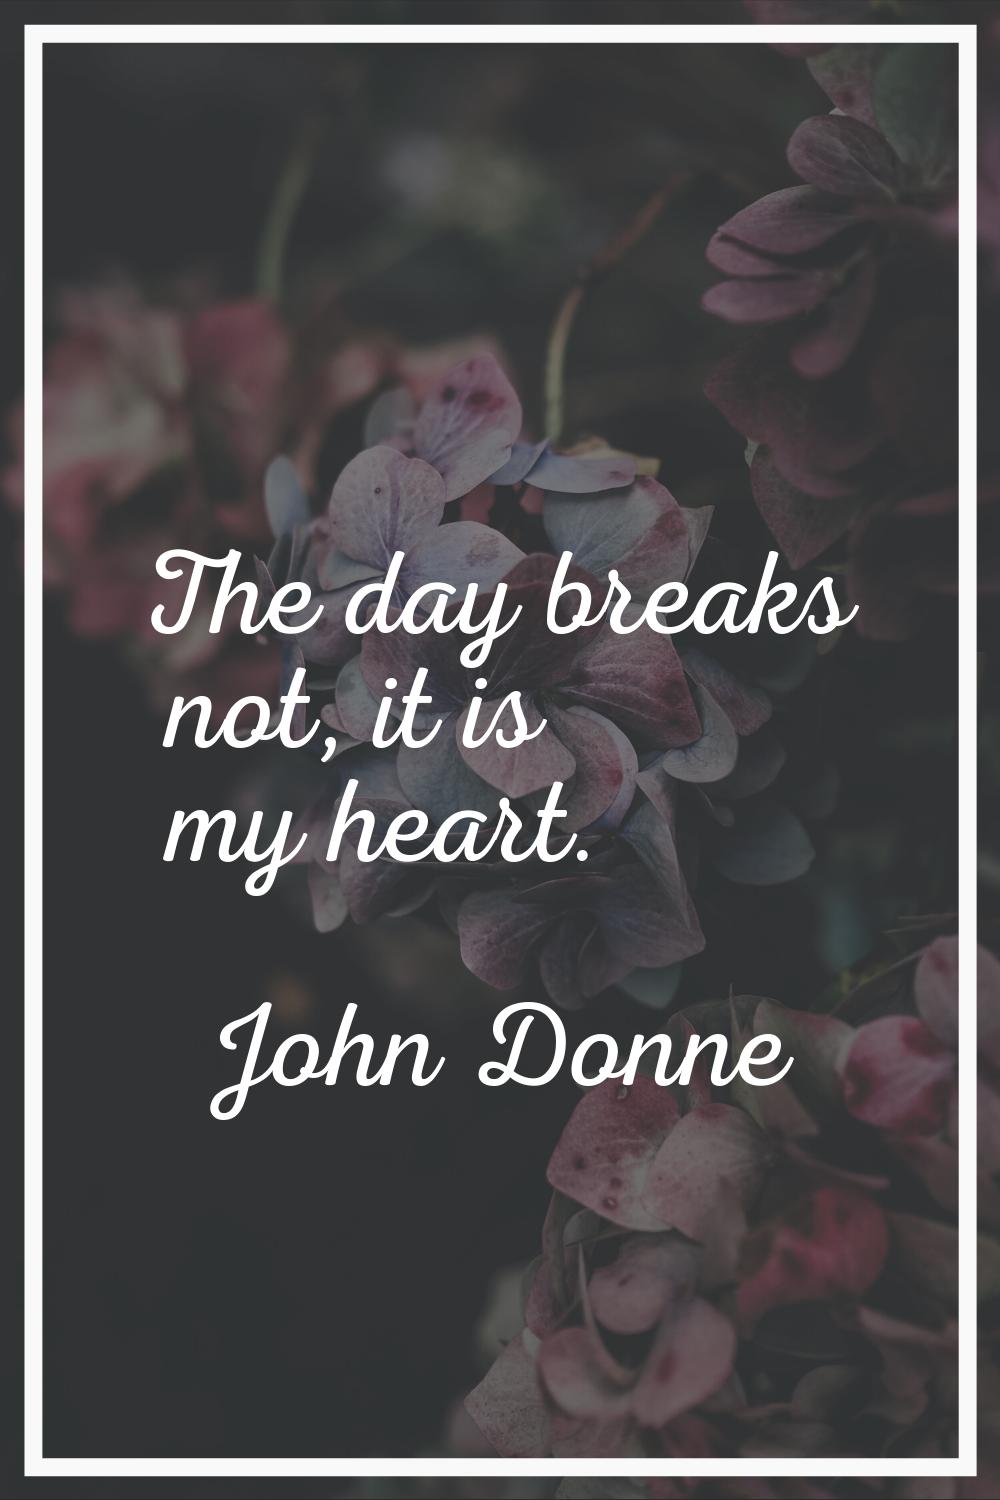 The day breaks not, it is my heart.